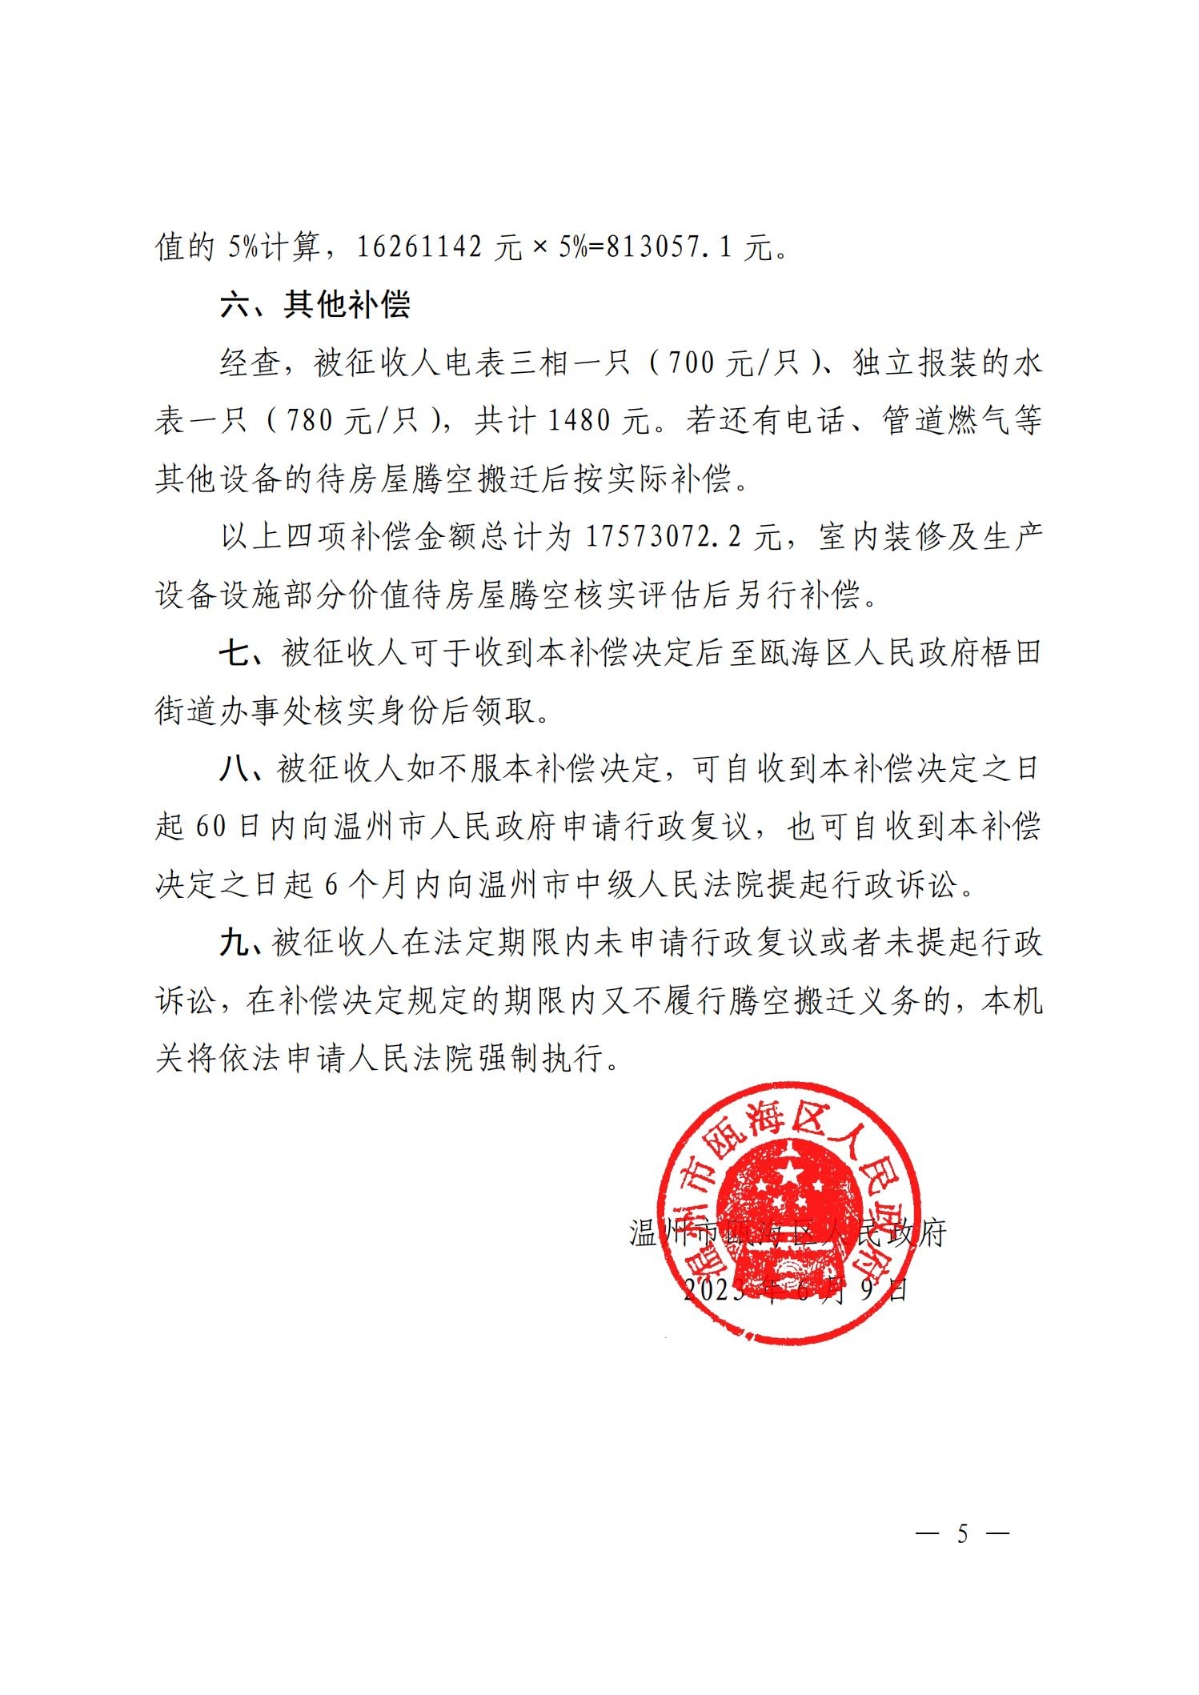 关于对温州市中超机械有限公司房屋的补偿决定(1)(1)_04.jpg